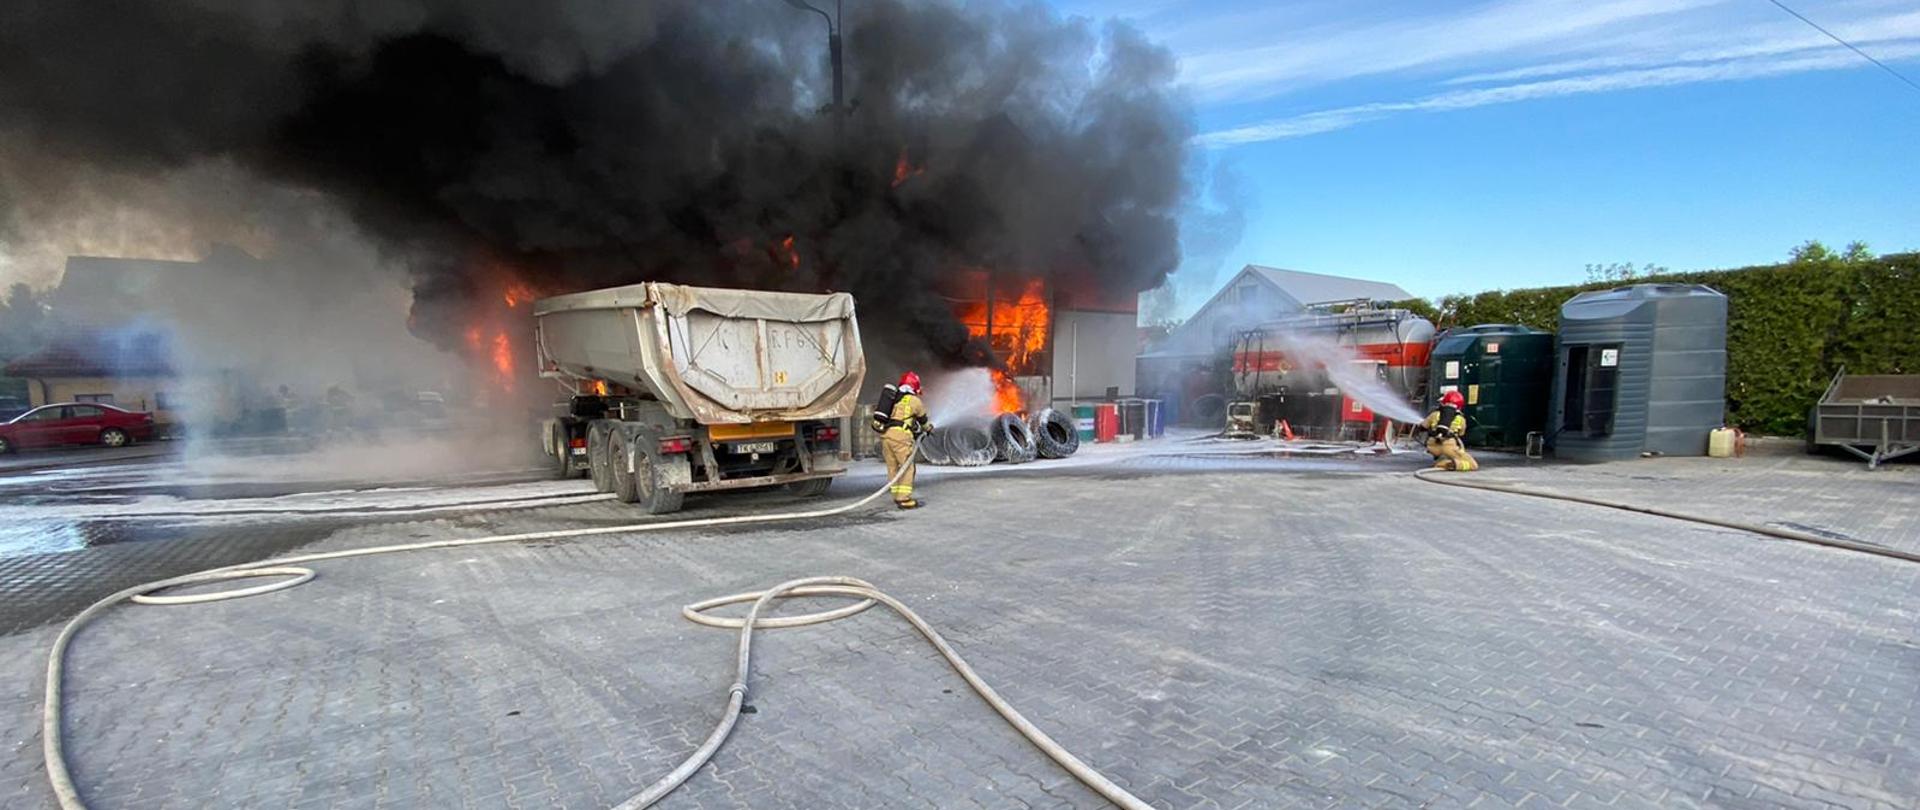 Zdjęcie przedstawia warsztat samochodowy, który w całości objęty jest płomieniami. Z budynku wydobywają się kłęby czarnego dymu. Przed garażem widać tył naczepy samochodu ciężarowego. Na placu utwardzonym kostką brukową rozciągnięte są węże strażackie. Dwóch strażaków trzymając w ręku prądownice wodne gasi pożar. 